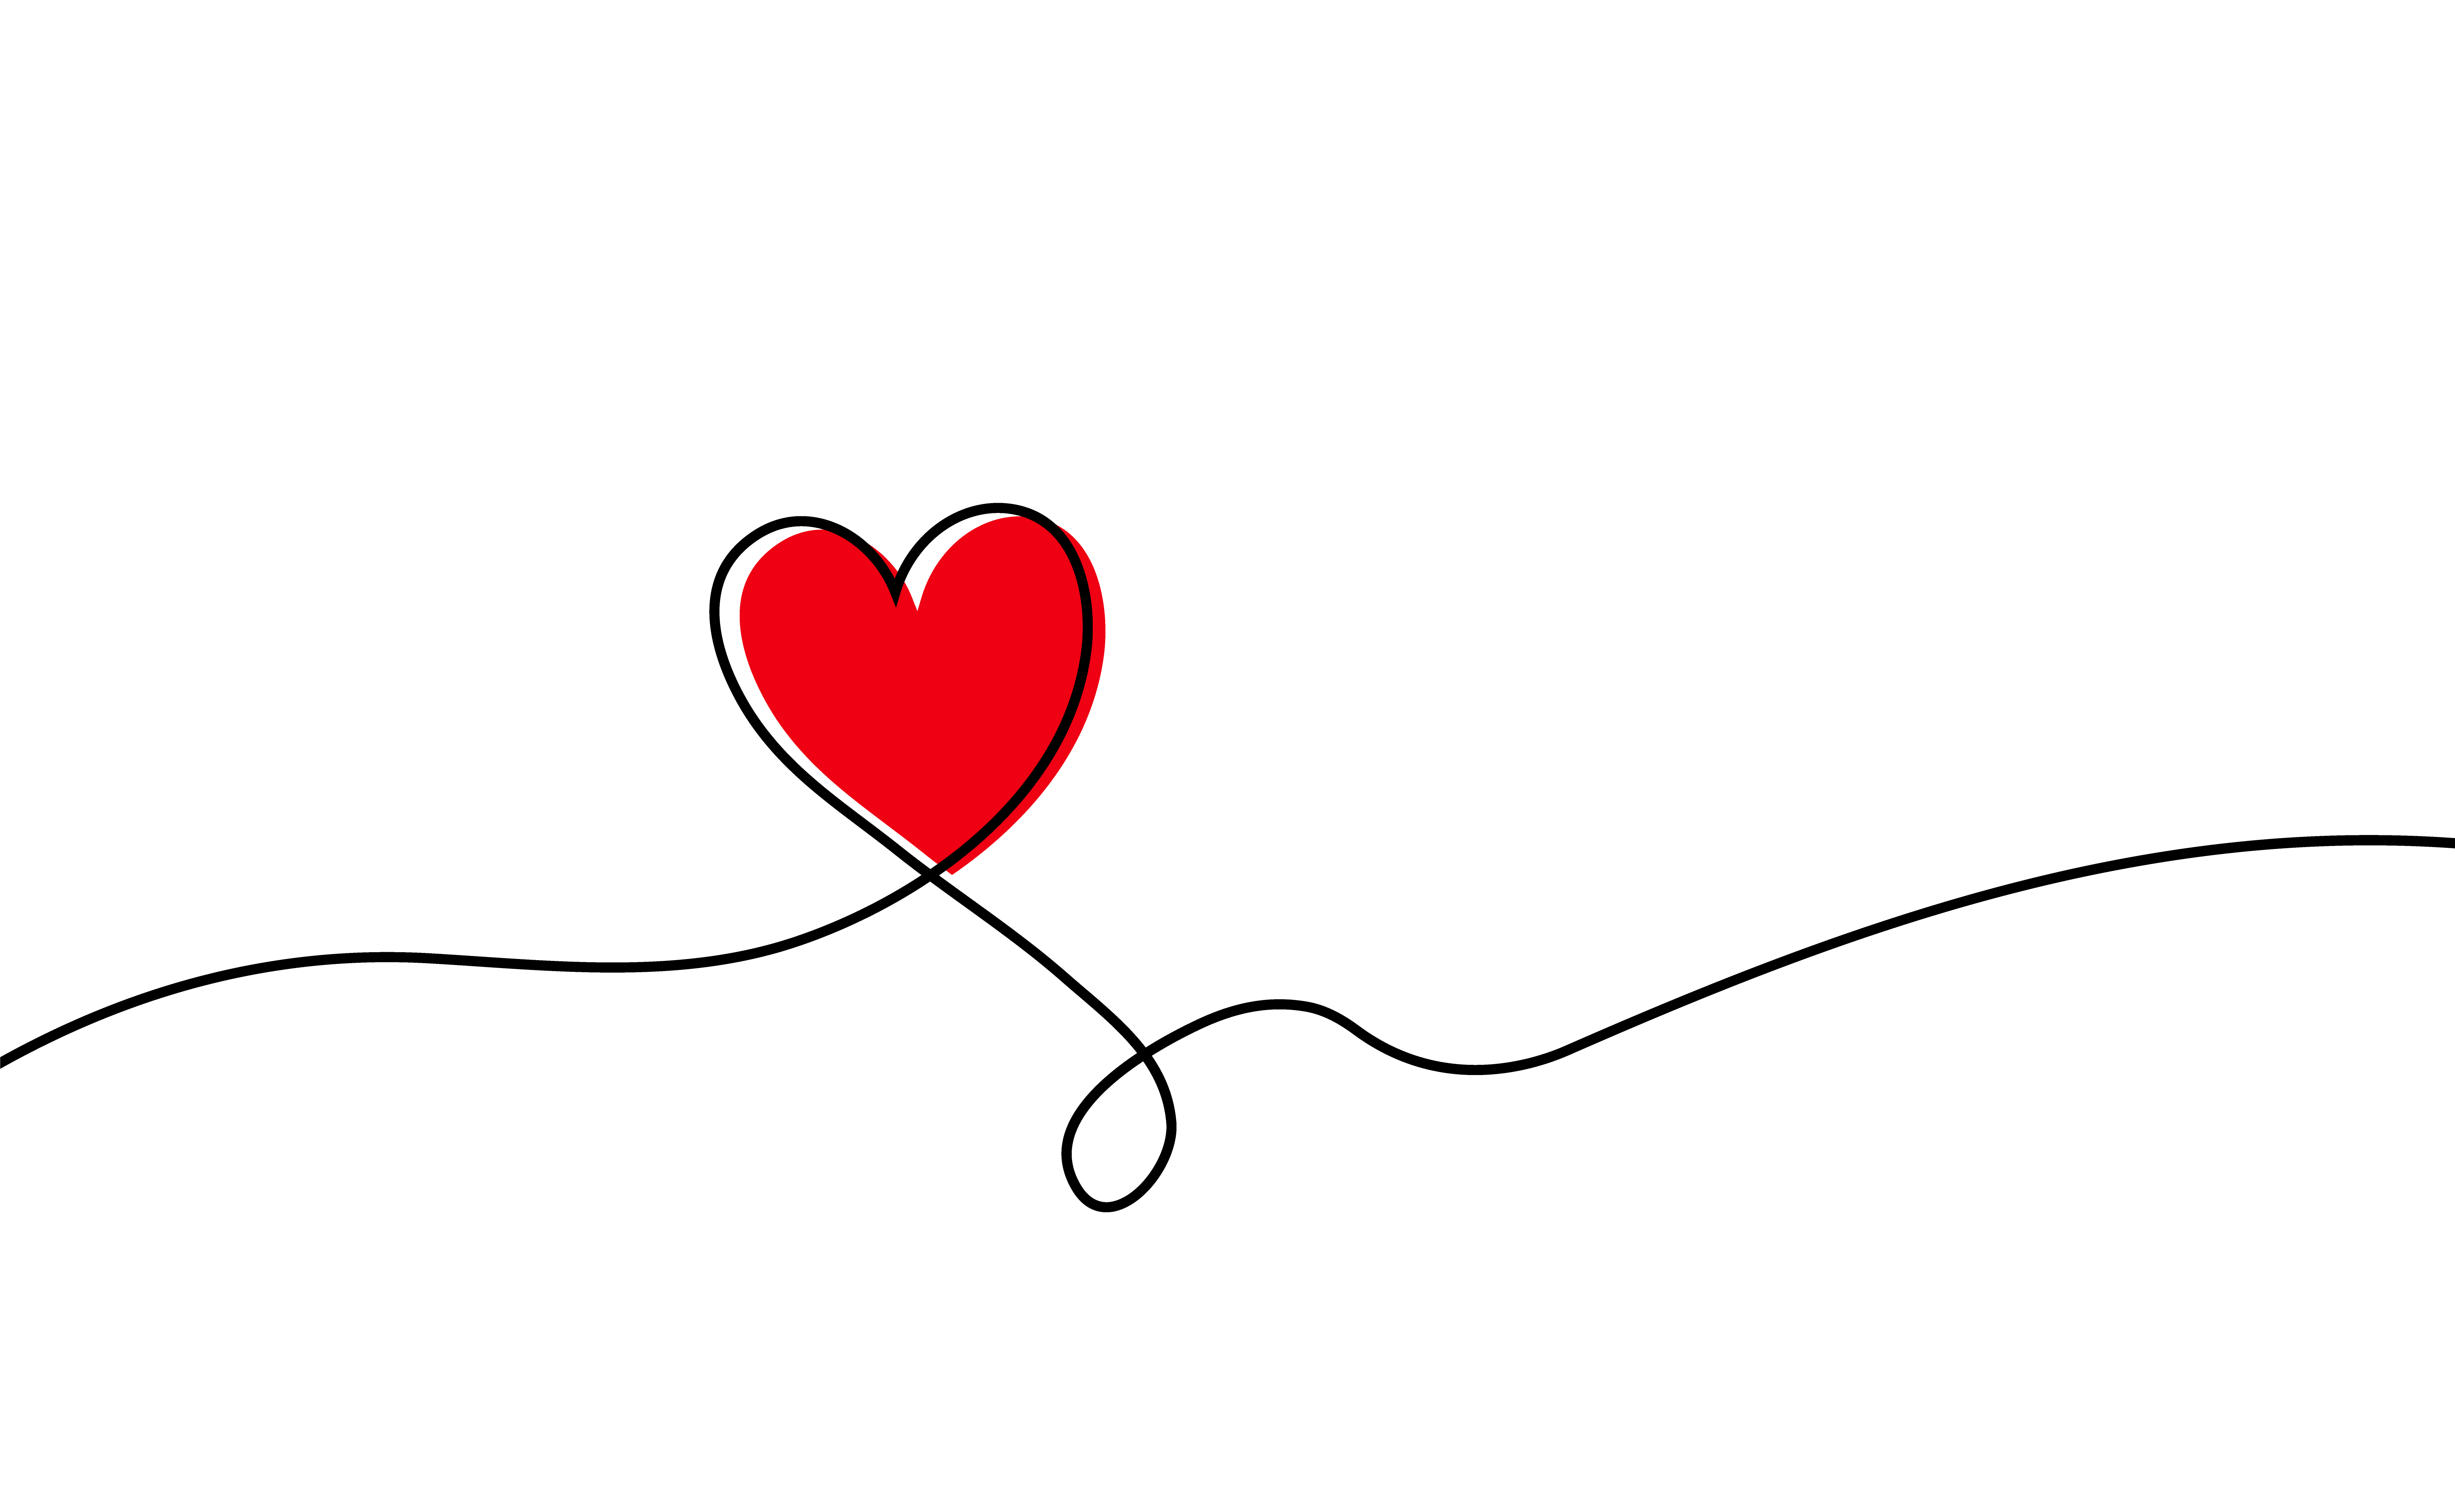 Hình trái tim đỏ là biểu tượng không thể thiếu trong mỗi lễ kỷ niệm hay sự kiện đặc biệt. Hãy nhìn vào hình ảnh này, mọi cảm xúc trong bạn sẽ được đánh thức và tràn đầy yêu thương.